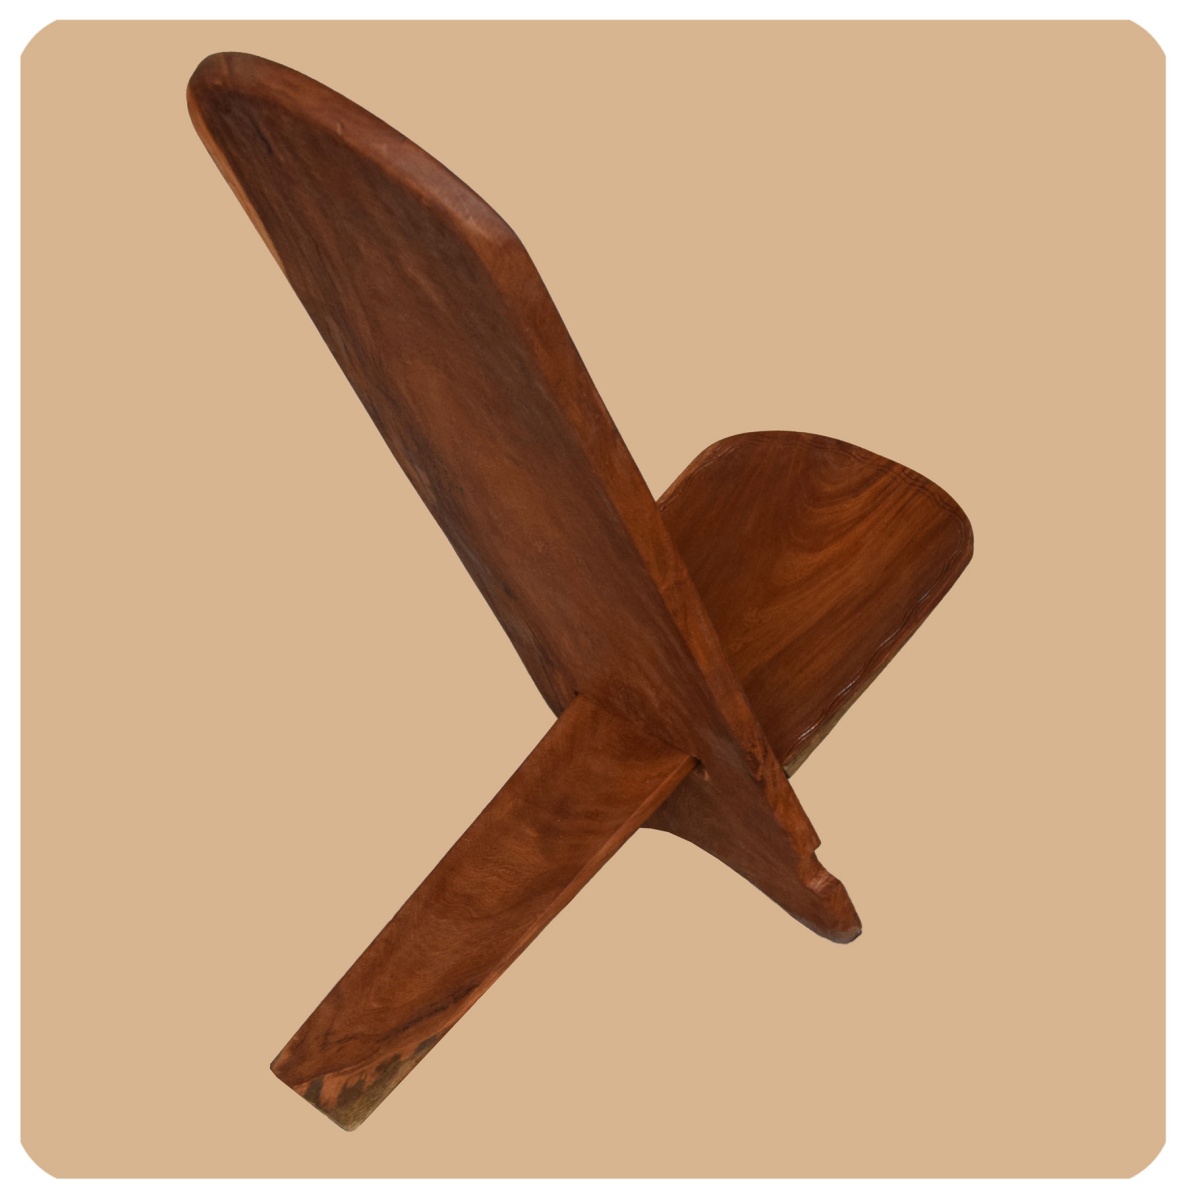 Chaise de bâton, meubles de chaise africaine, chaise en bois, chaise viking, chaise médiévale, travail manuel de chaise de trappeur